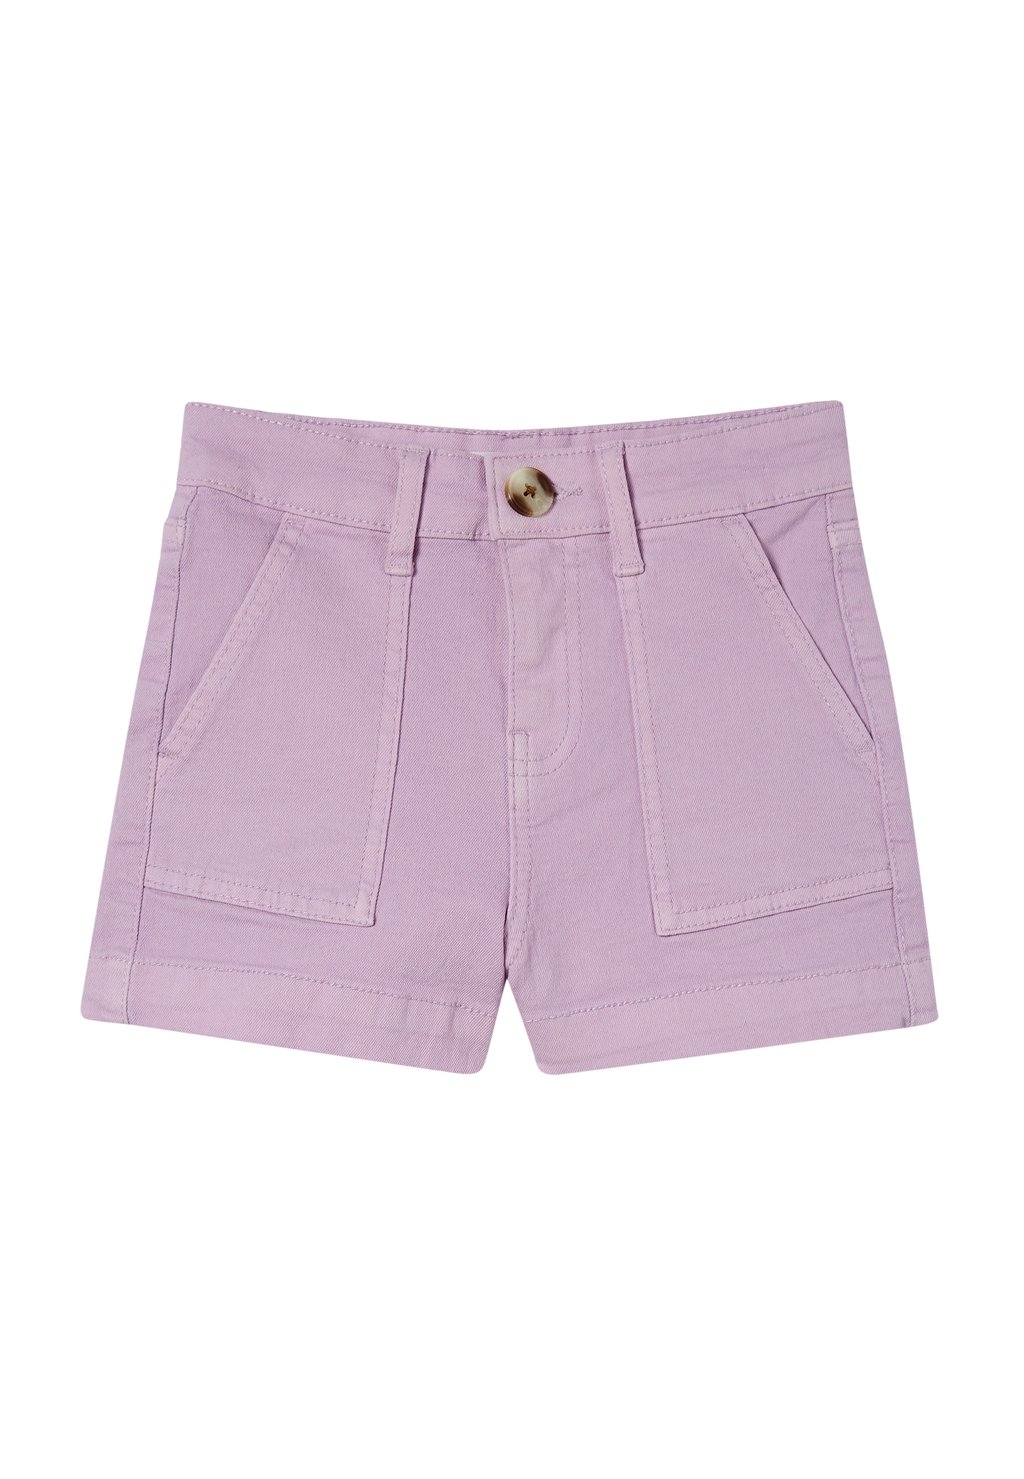 Джинсовые шорты Cotton On, фиолетовый